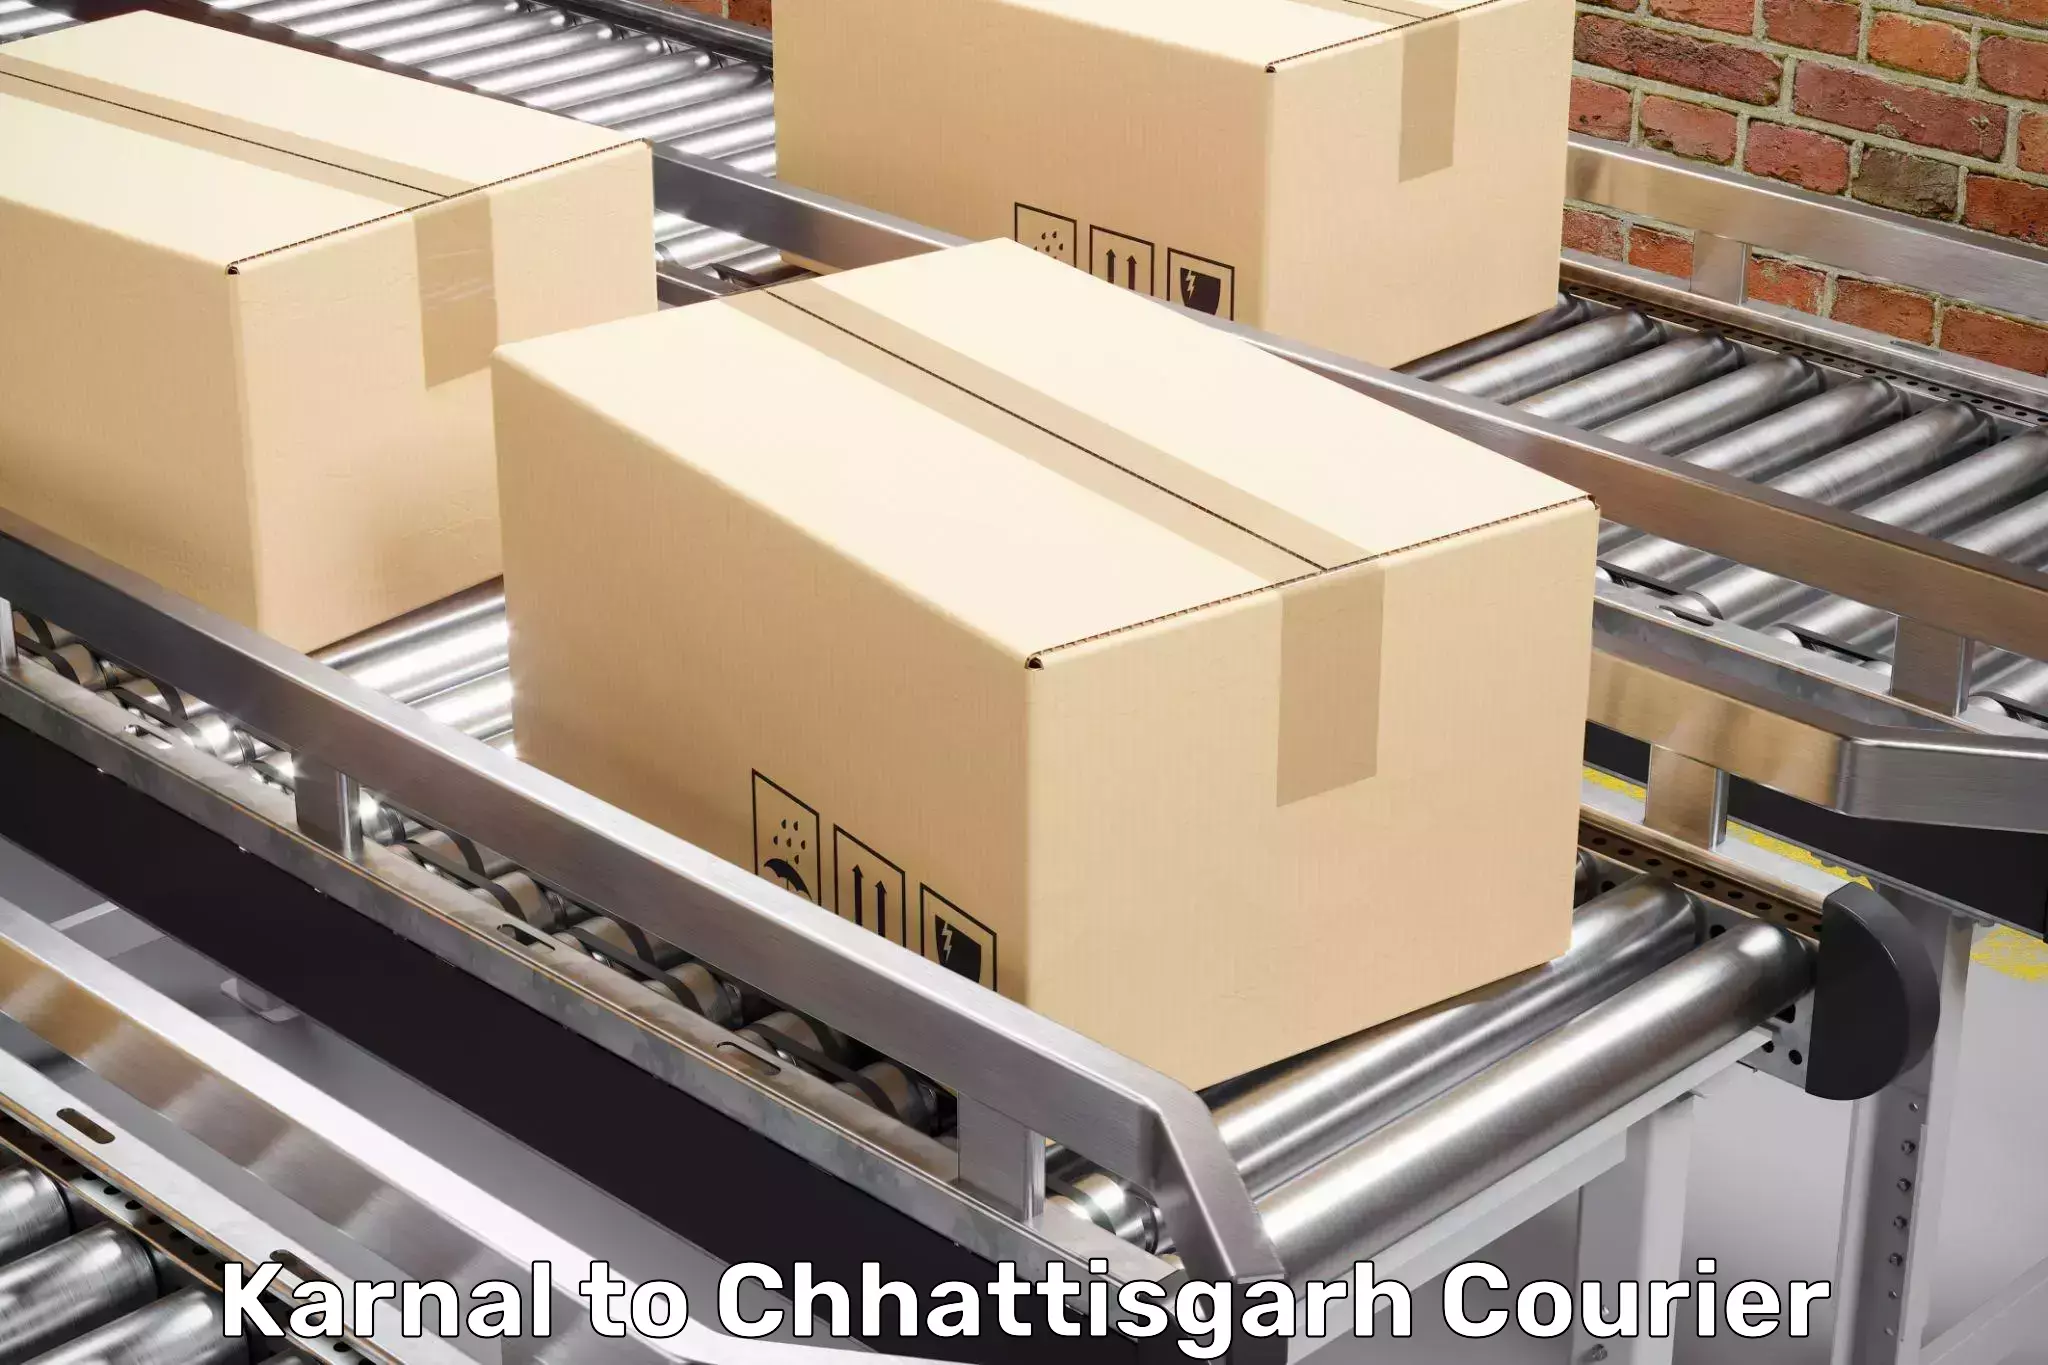 Furniture transport experts Karnal to Korea Chhattisgarh